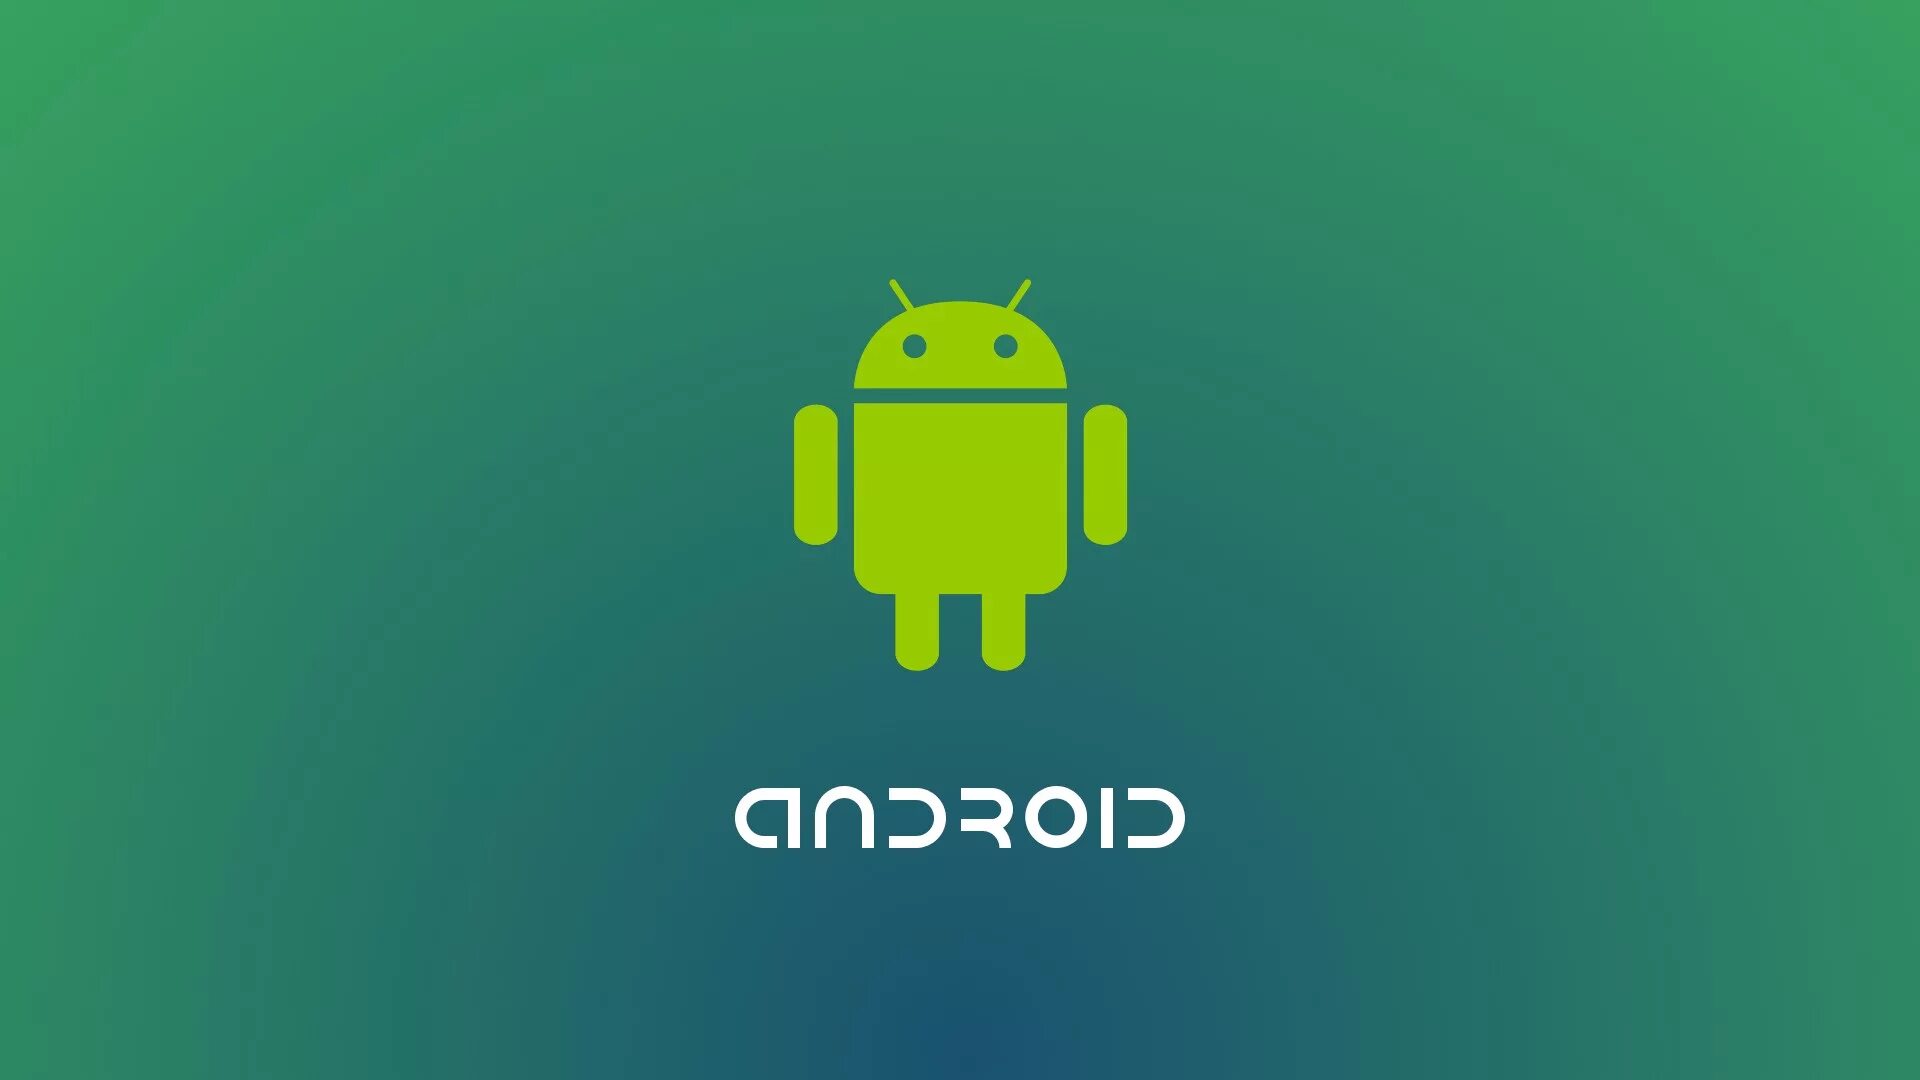 Операционная система телефона андроид. Операционная система Android. Логотип андроид. Мобильная Операционная система андроид. ОС андроид логотип.